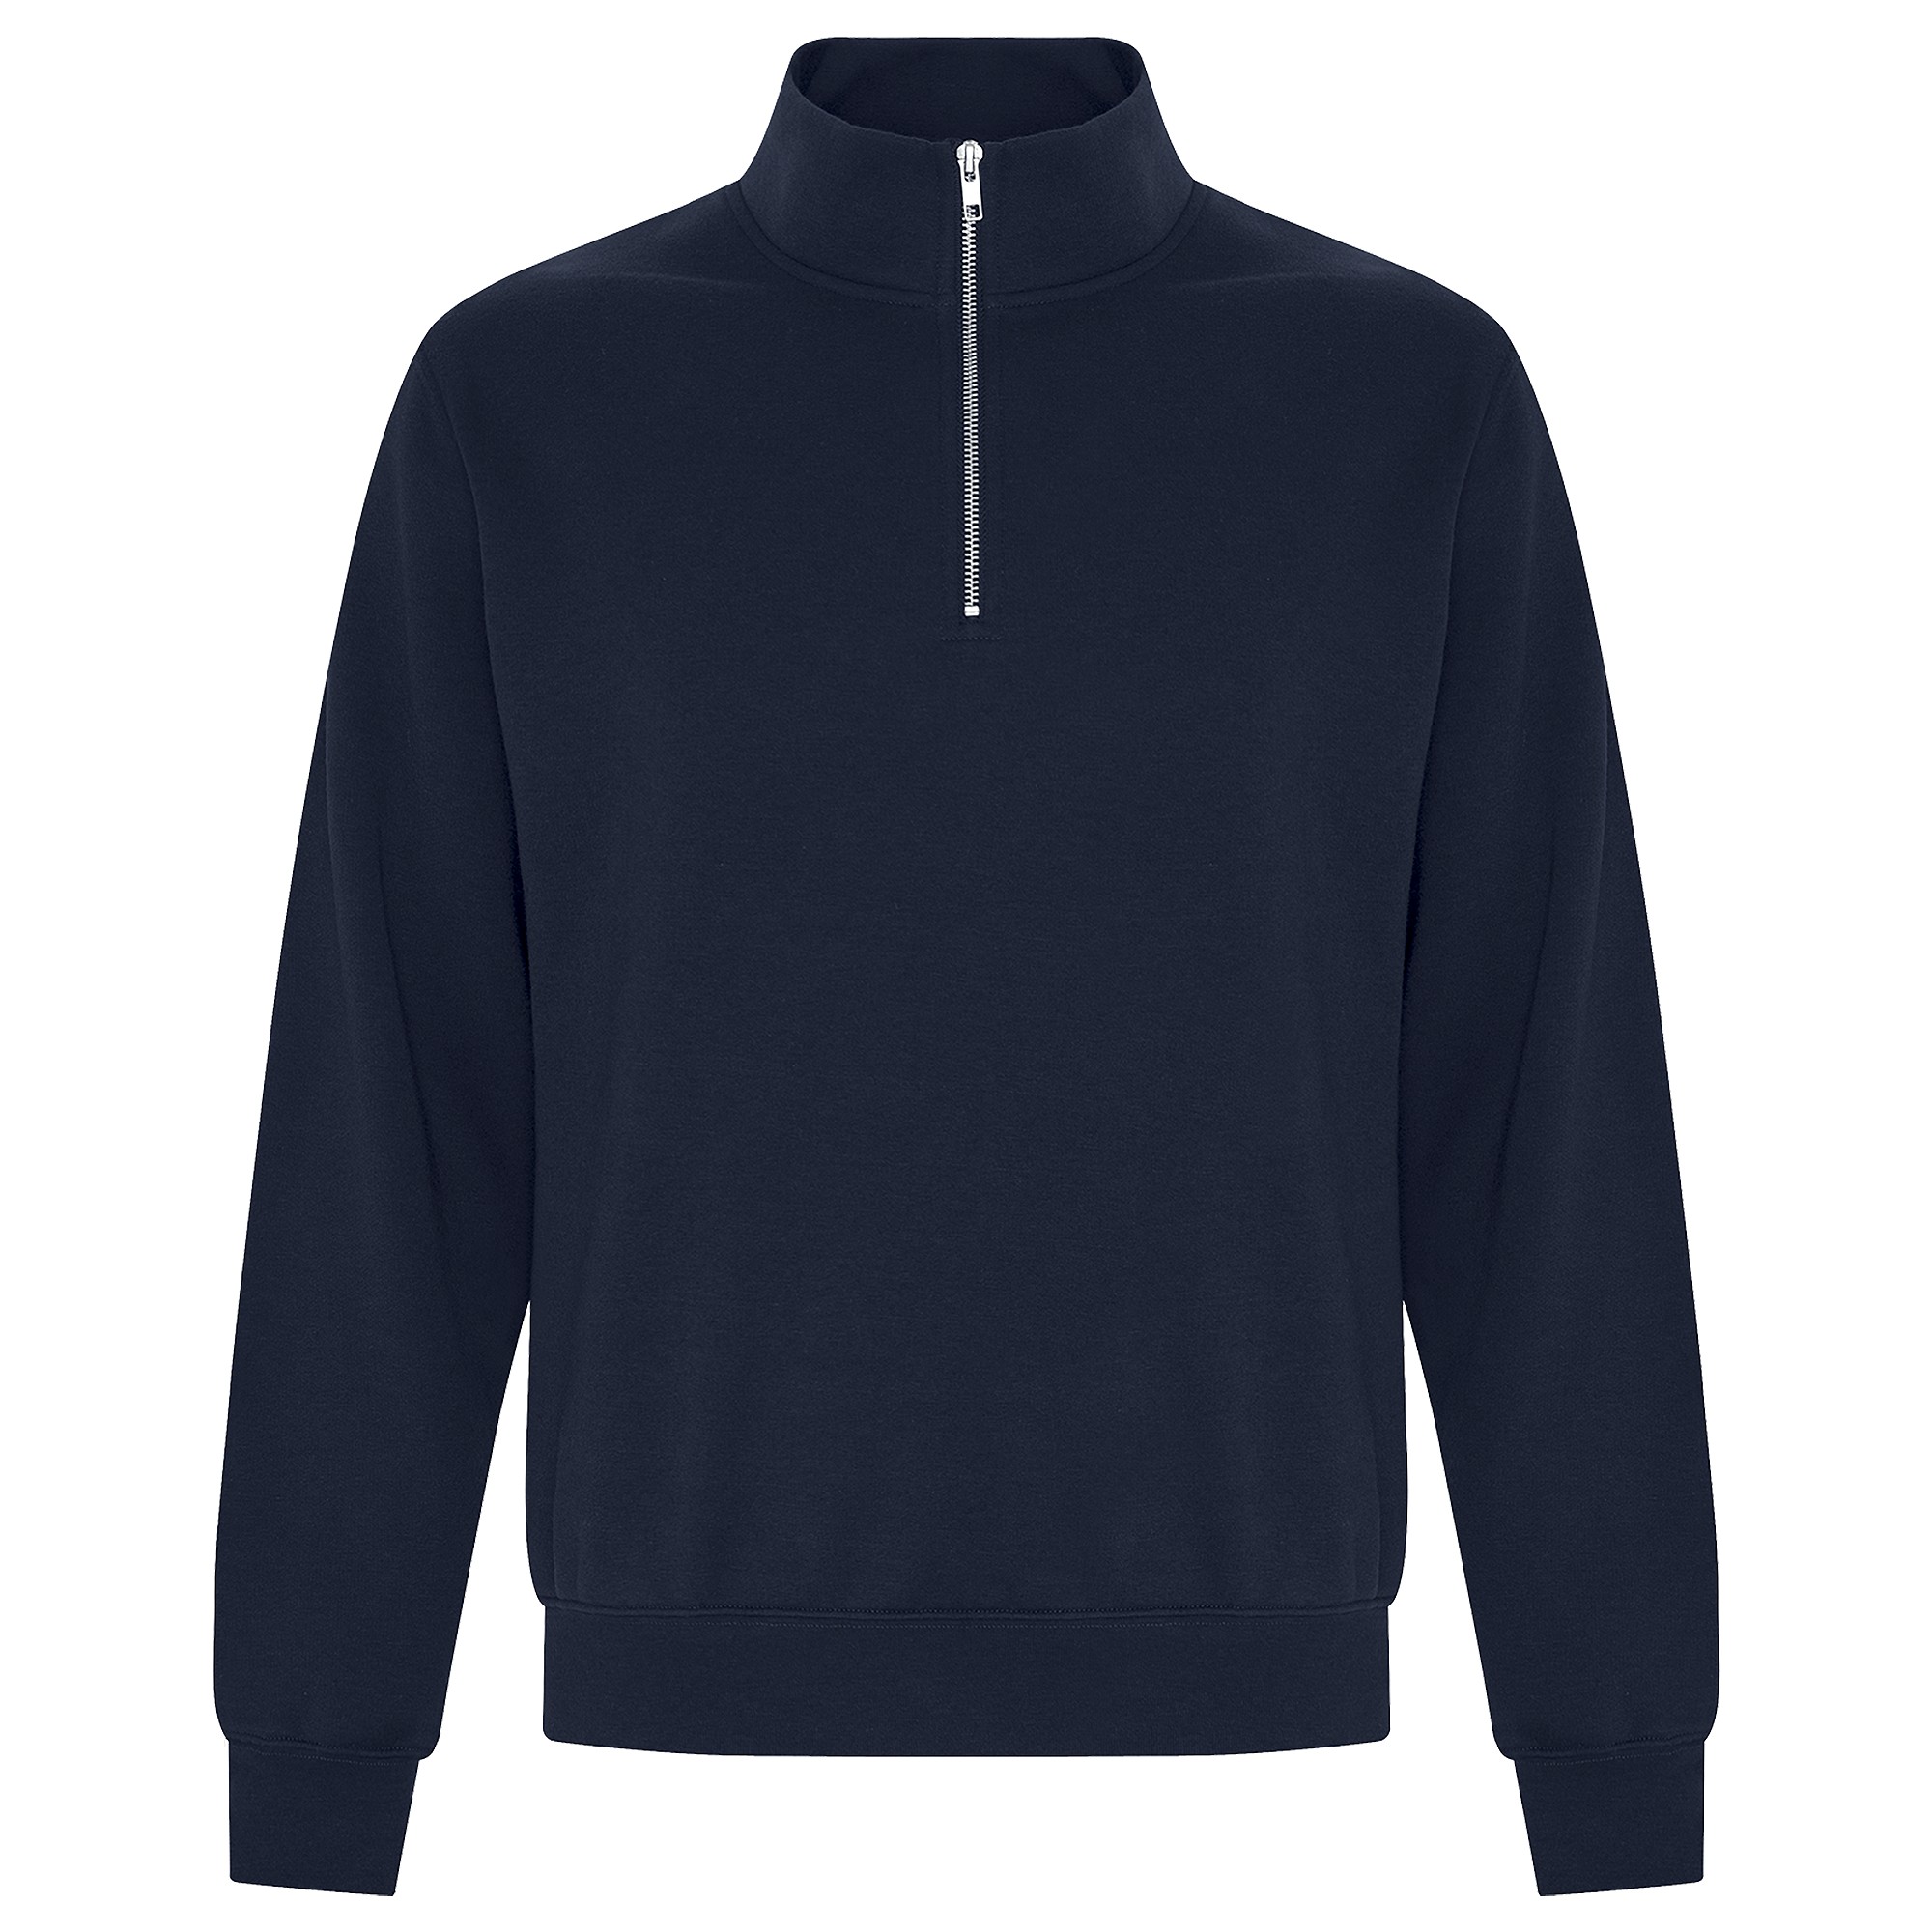 AMP_CA | ATC® Everyday Fleece 1/4 Zip Sweatshirt